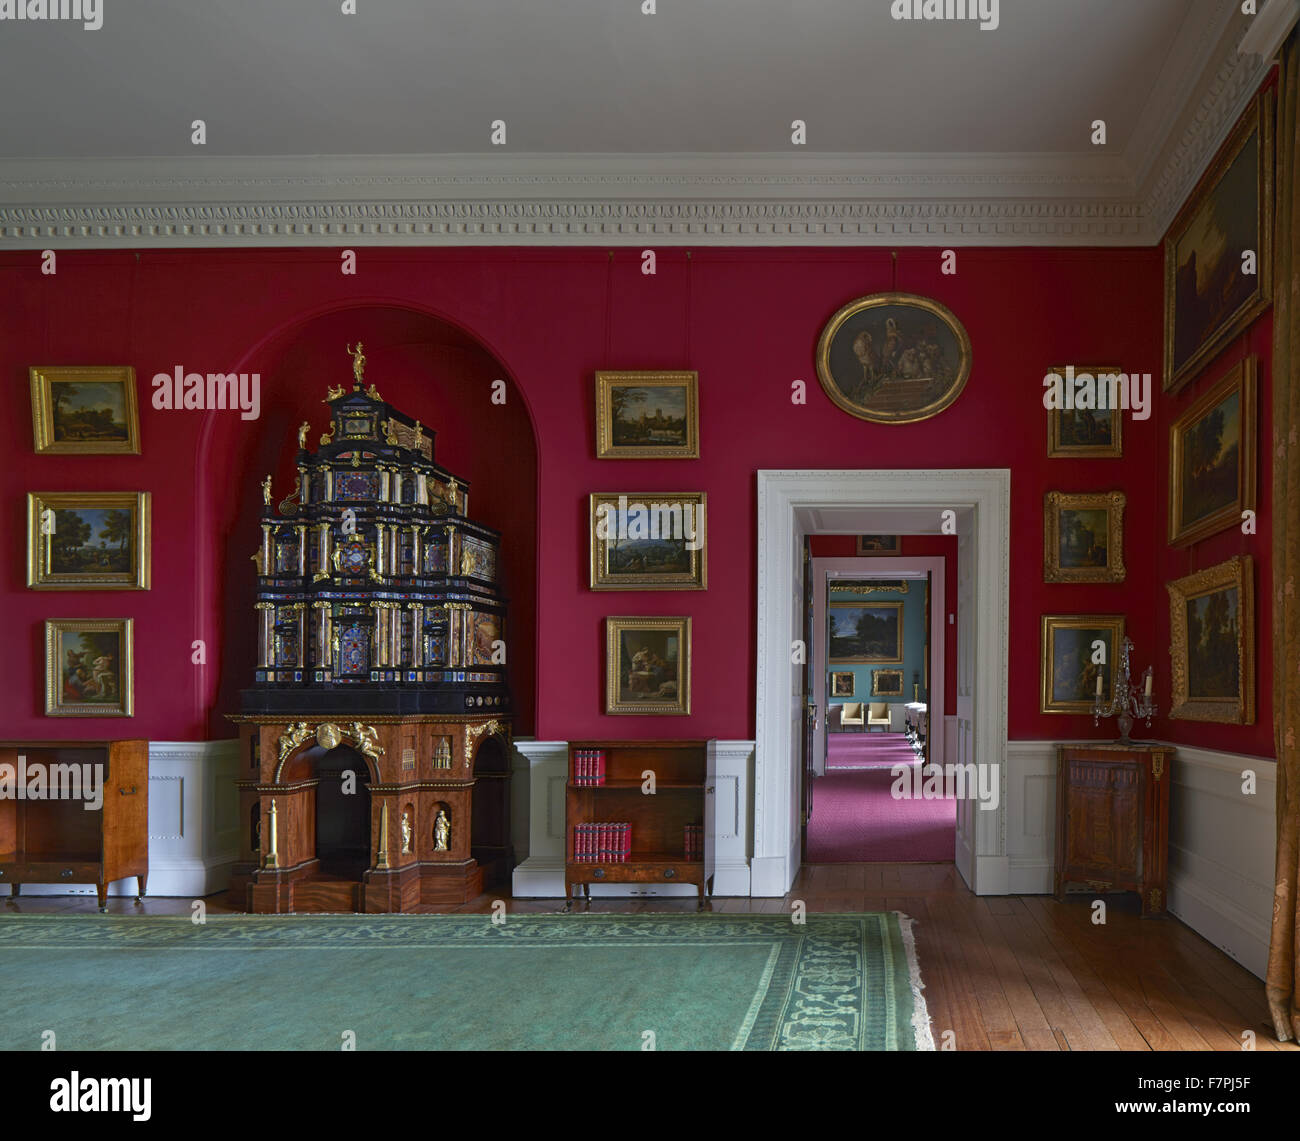 Le Cabinet du pape vu dans la salle du Cabinet à Stourhead, Wiltshire. Stourhead House contient une bibliothèque Regency uniques, meubles et peintures d'inspiration de Chippendale. Banque D'Images